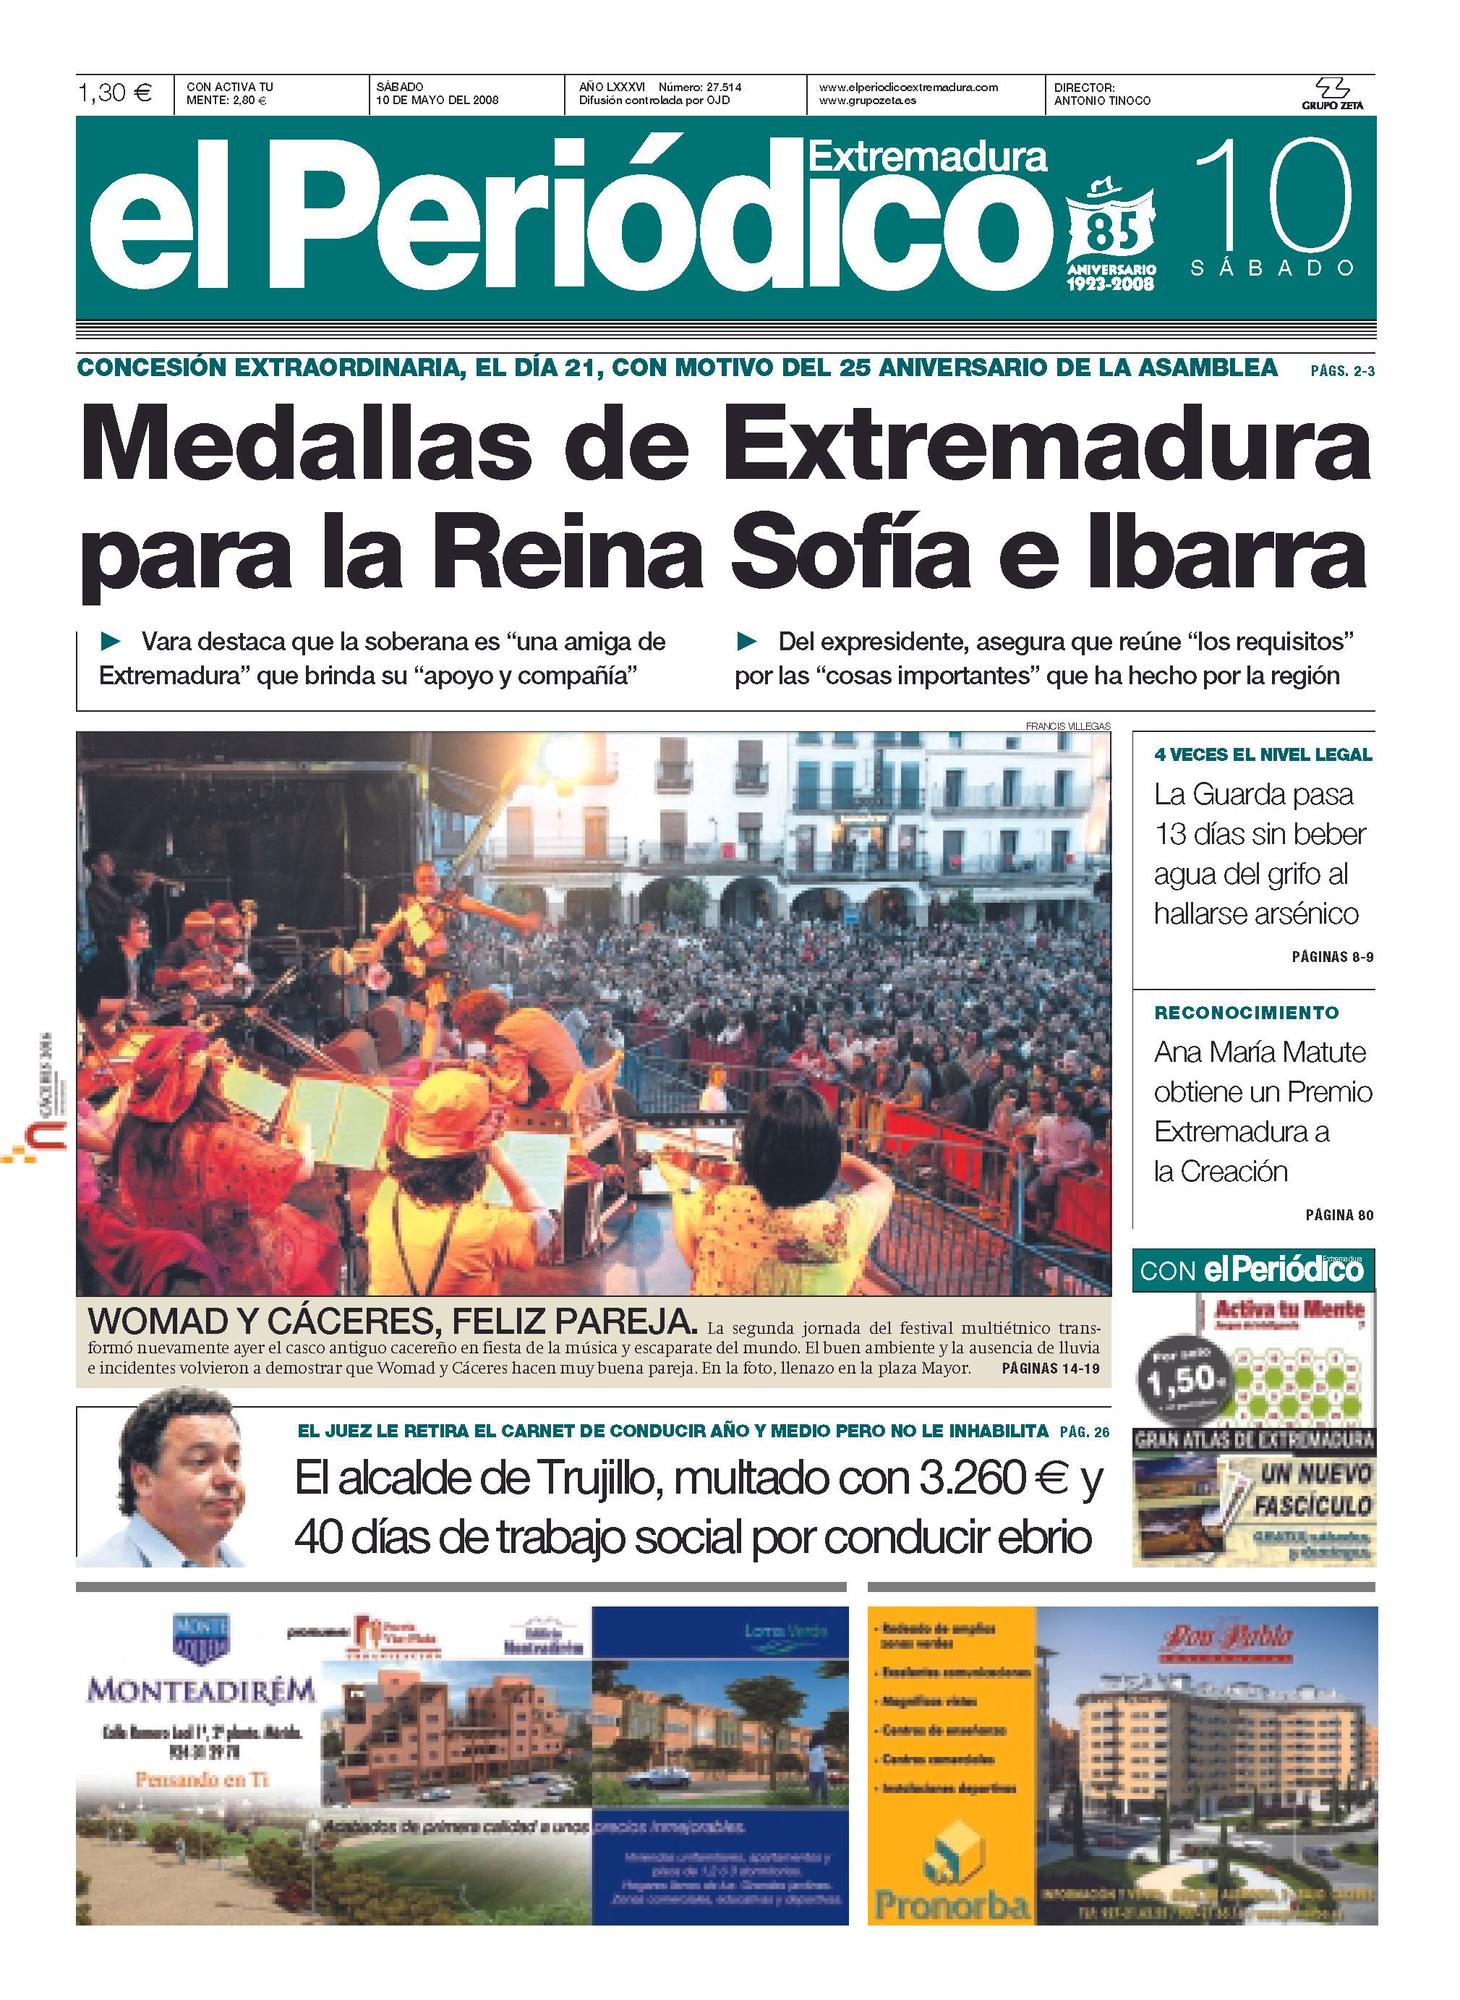 Portada de El Periódico Extremadura el 10 de mayo de 2008.